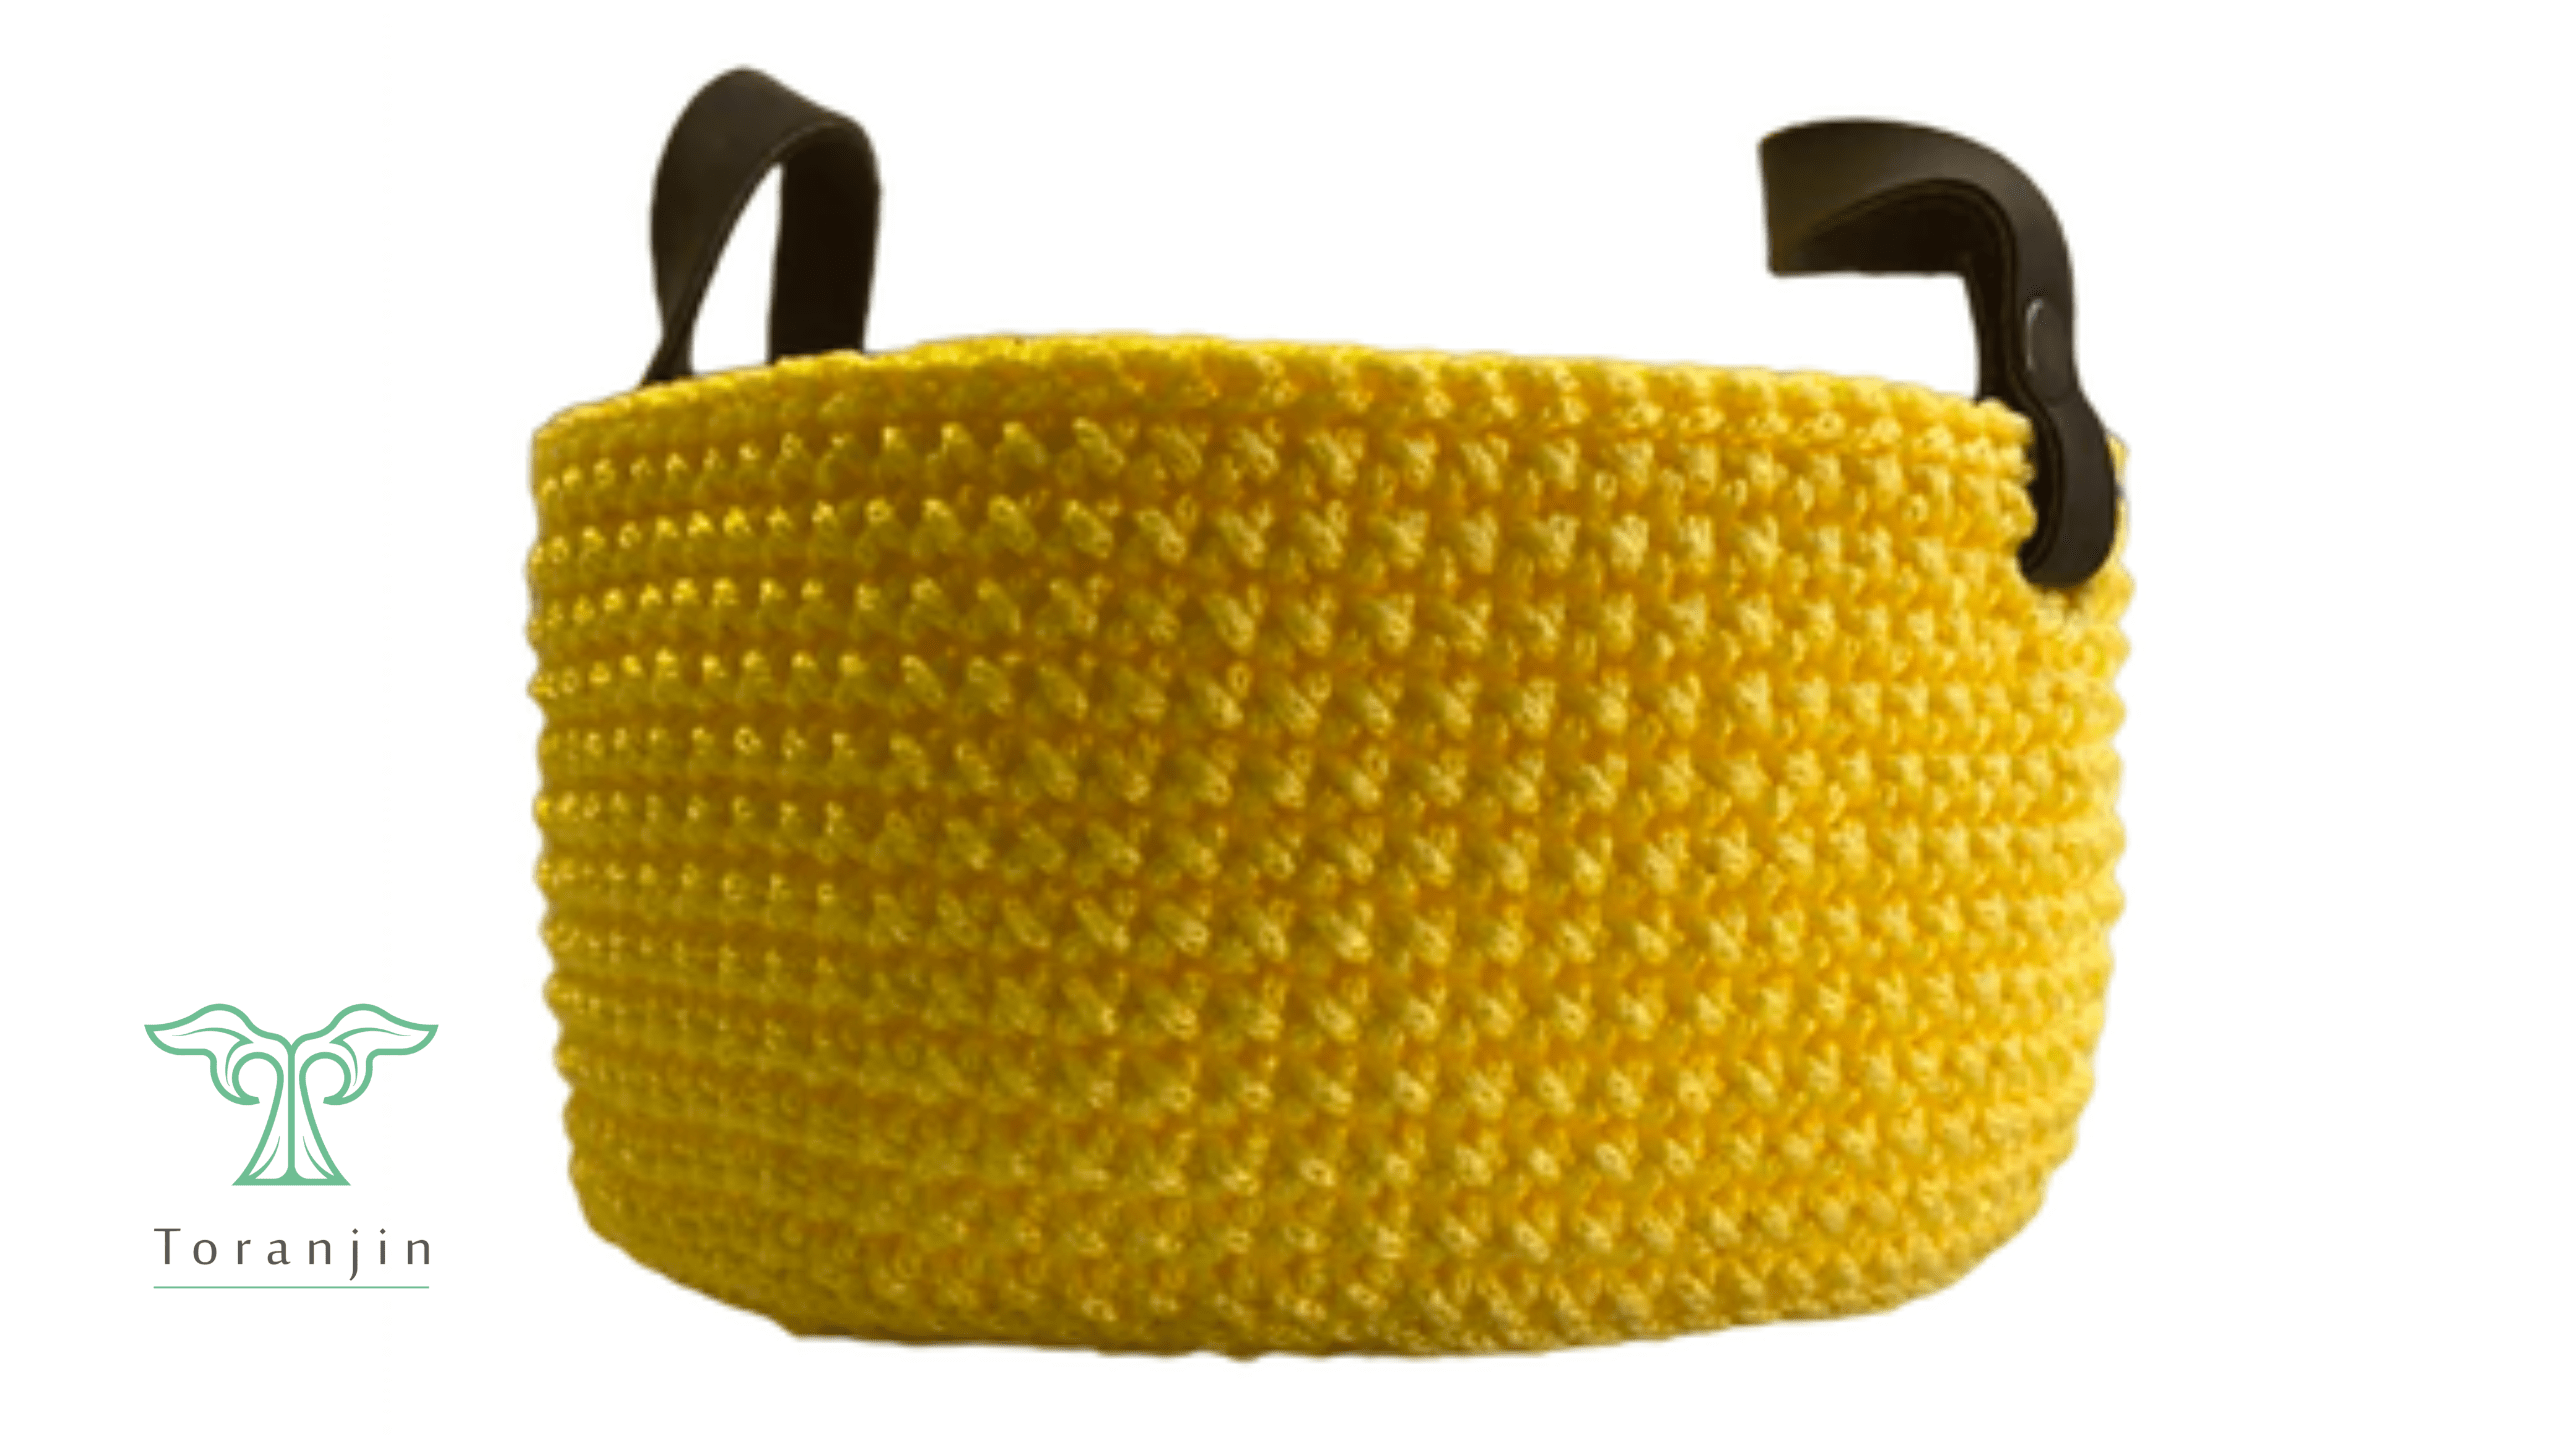 Round Crochet Storage Basket